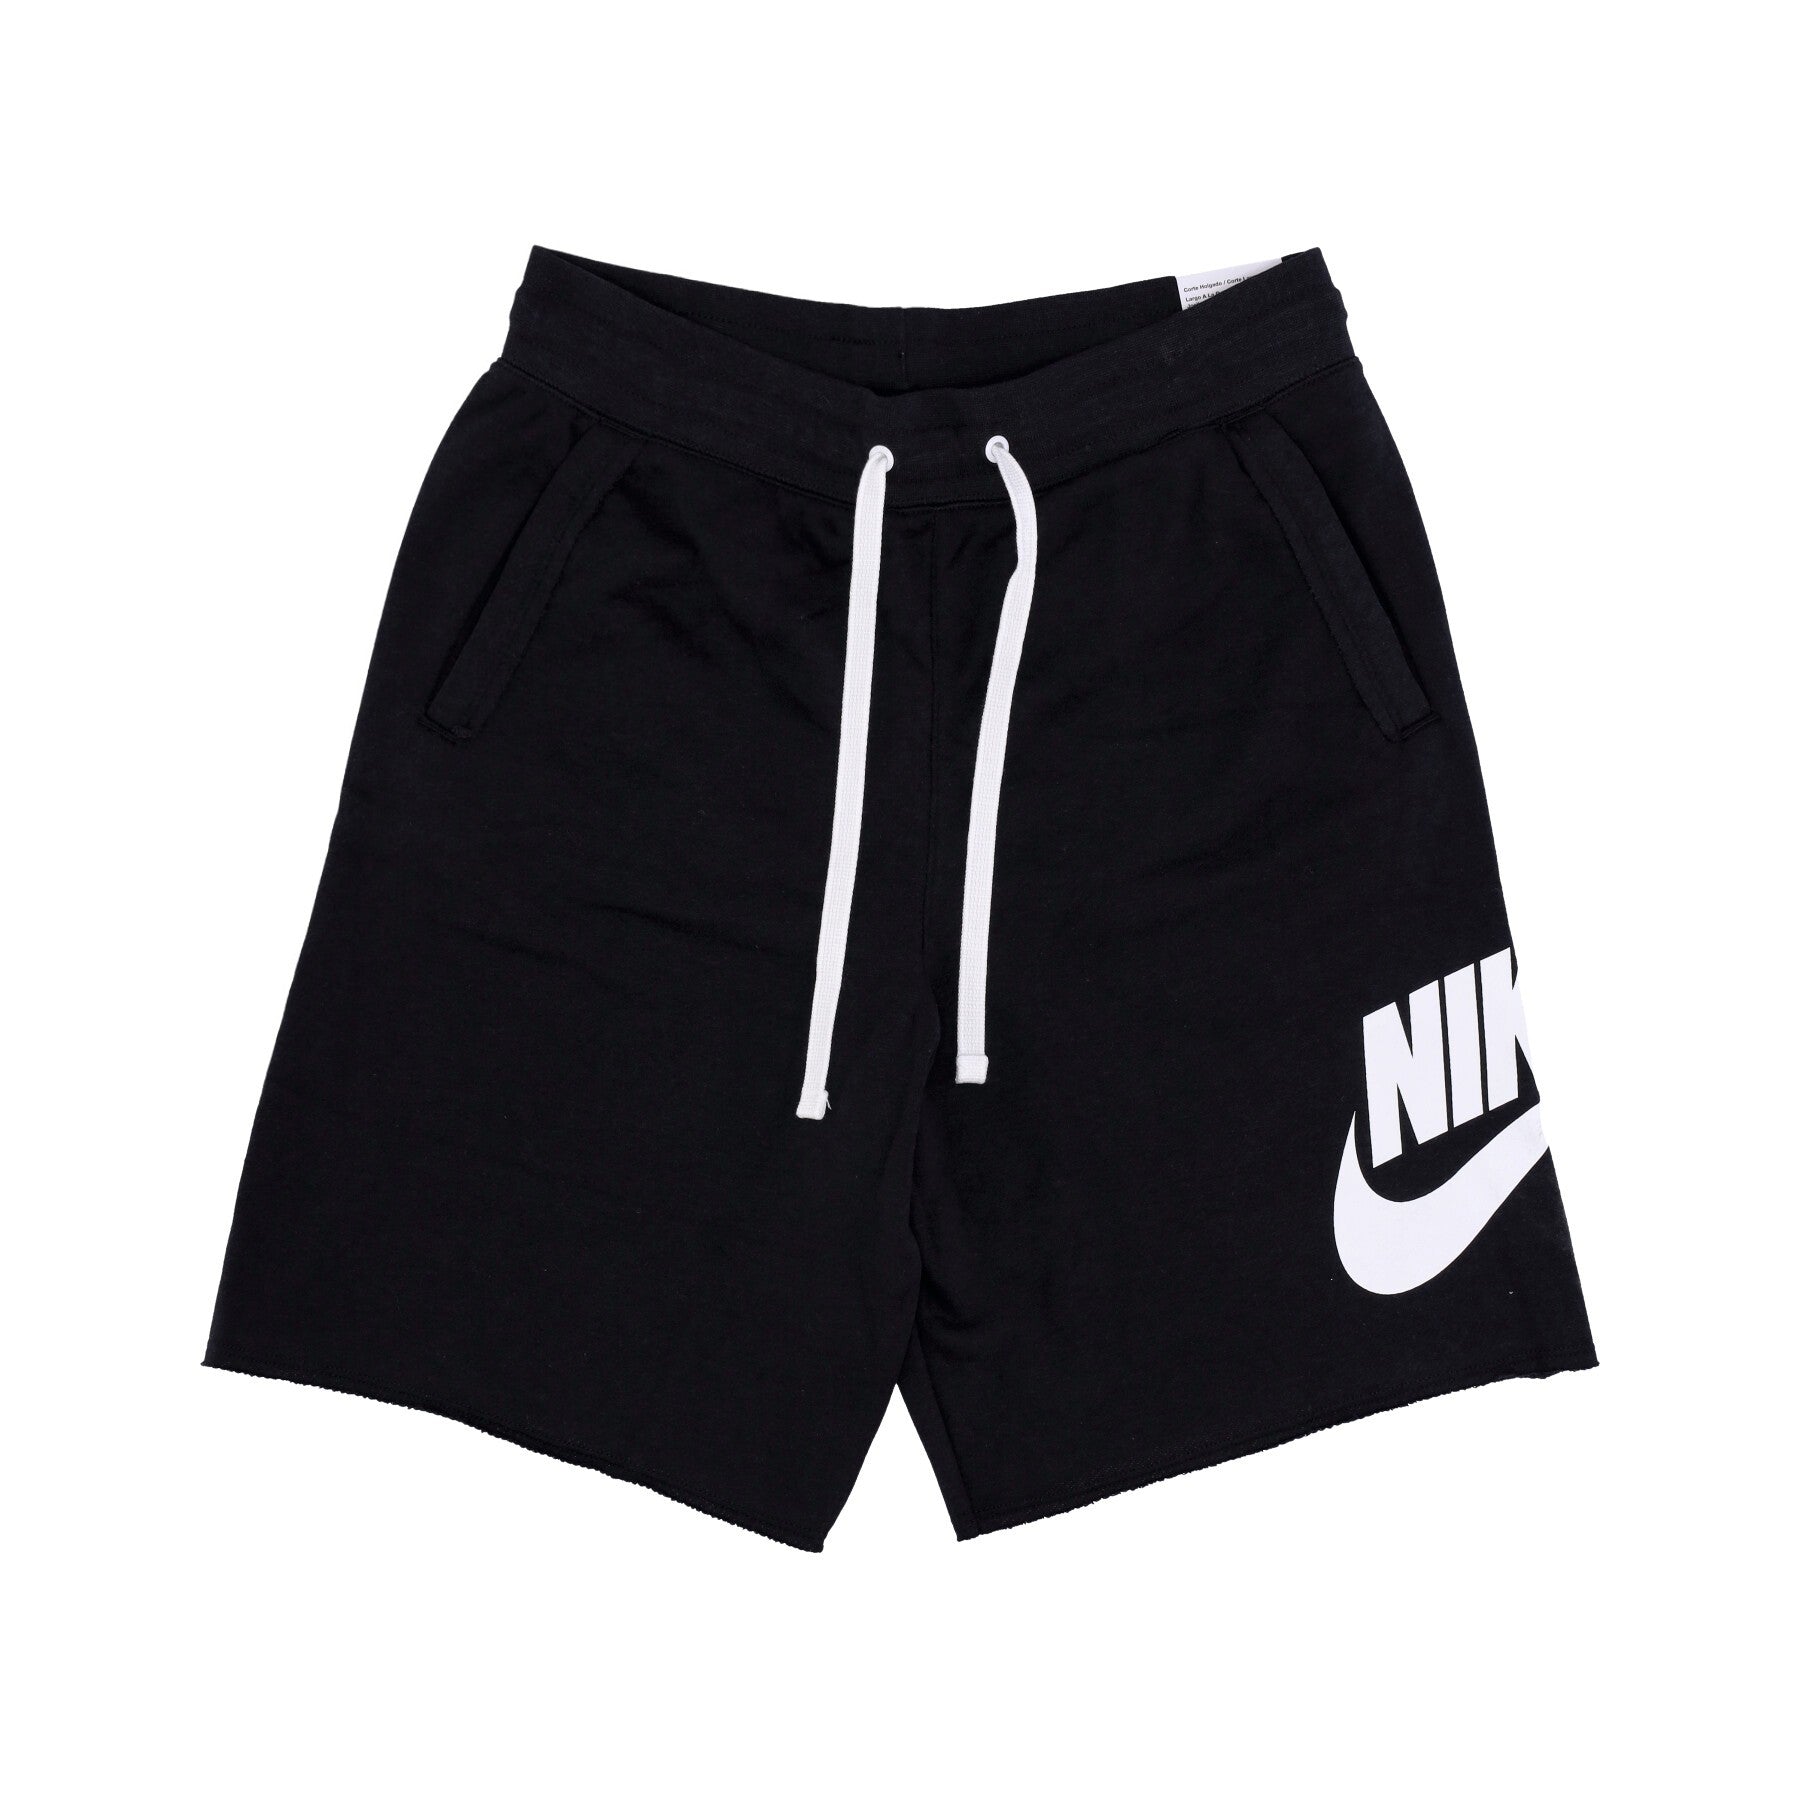 Nike, Pantalone Corto Tuta Uomo Club Alumni Hbr Ft Short, Black/white/white